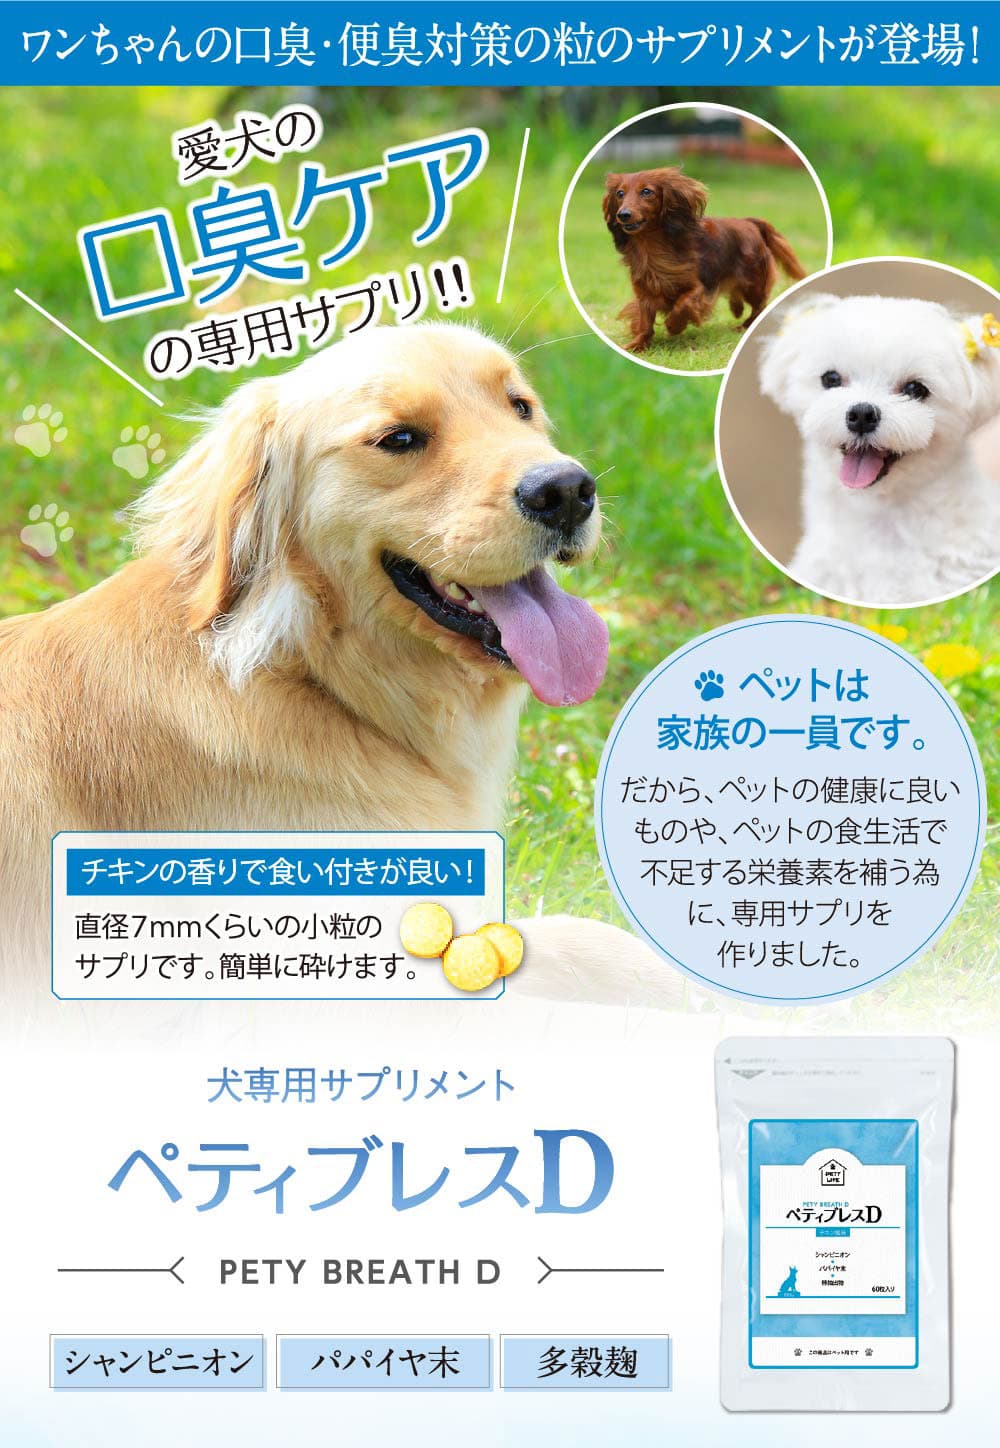 犬専用サプリメント ペティブレスd アーユスライフ アムレシャンプー スキンケア商品の通販サイト